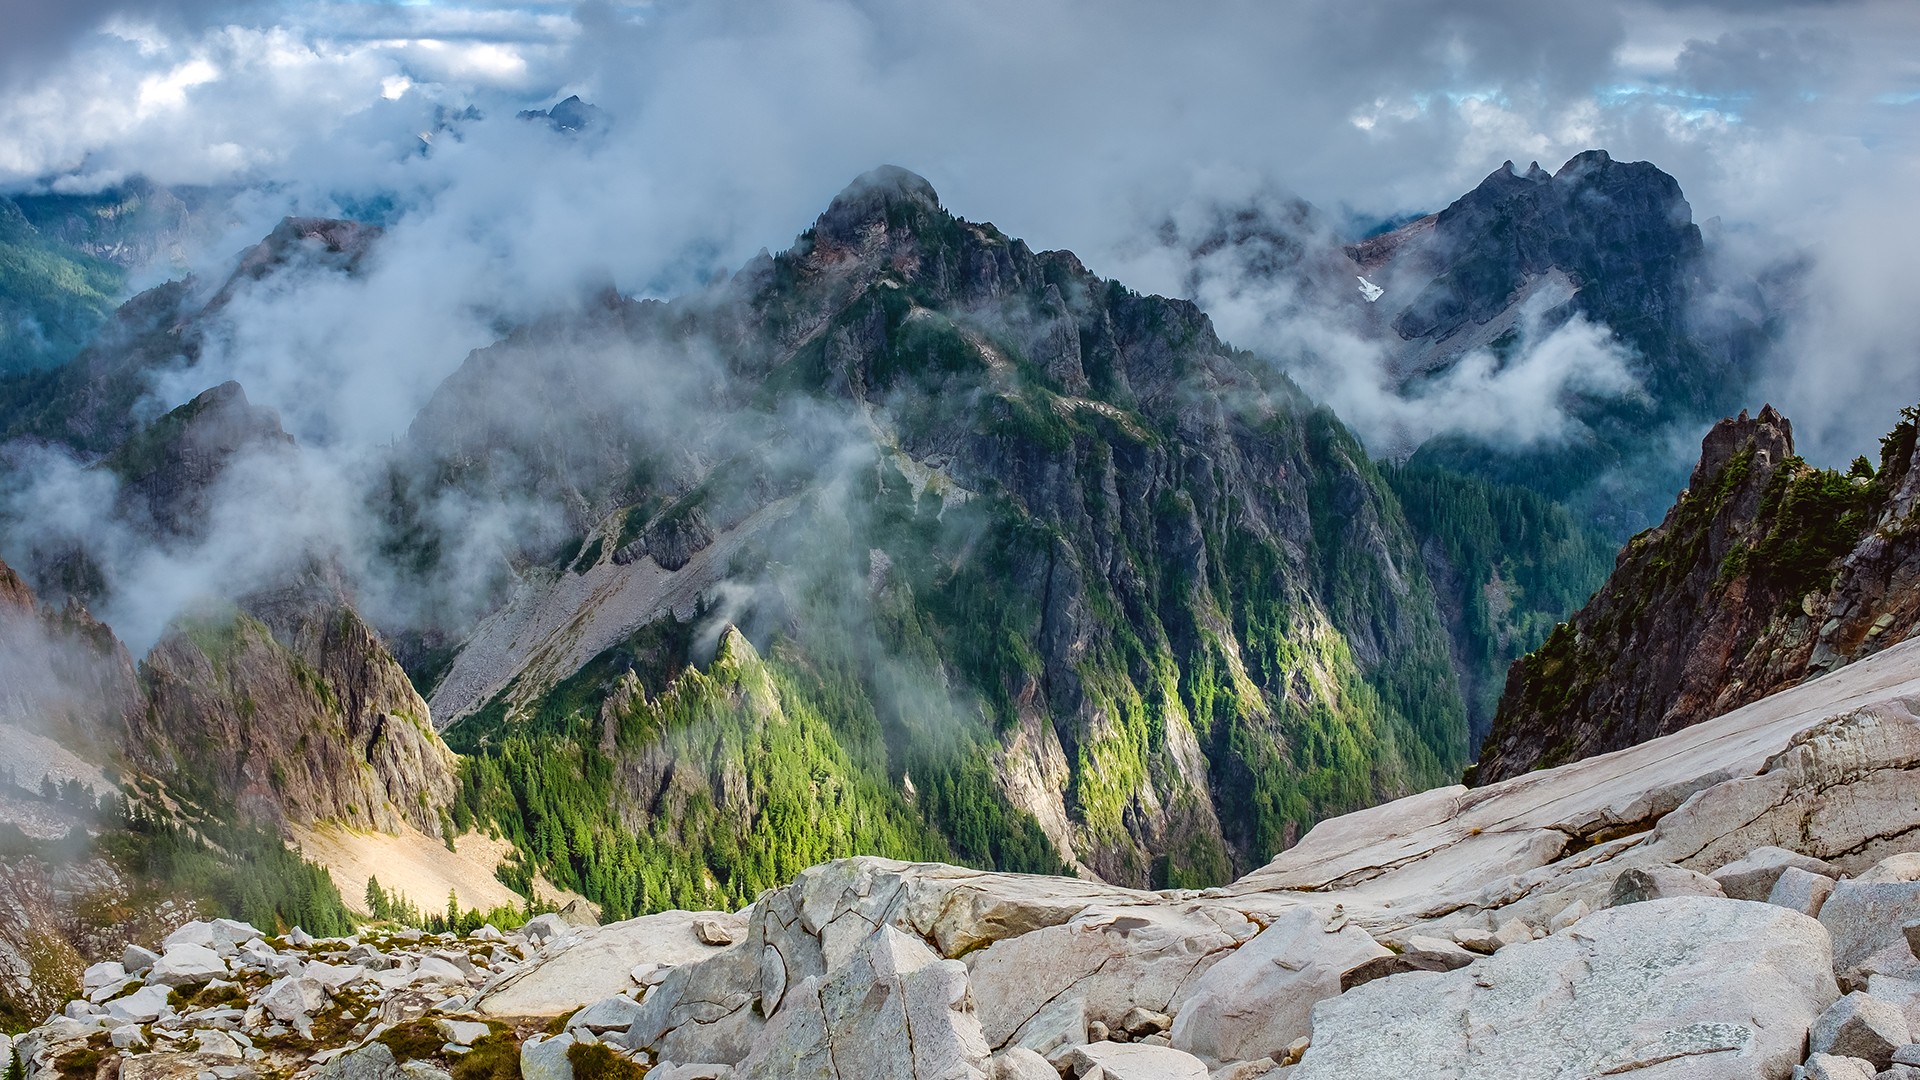 General 1920x1080 landscape mountains nature rocks clouds Washington (state) USA summit daylight